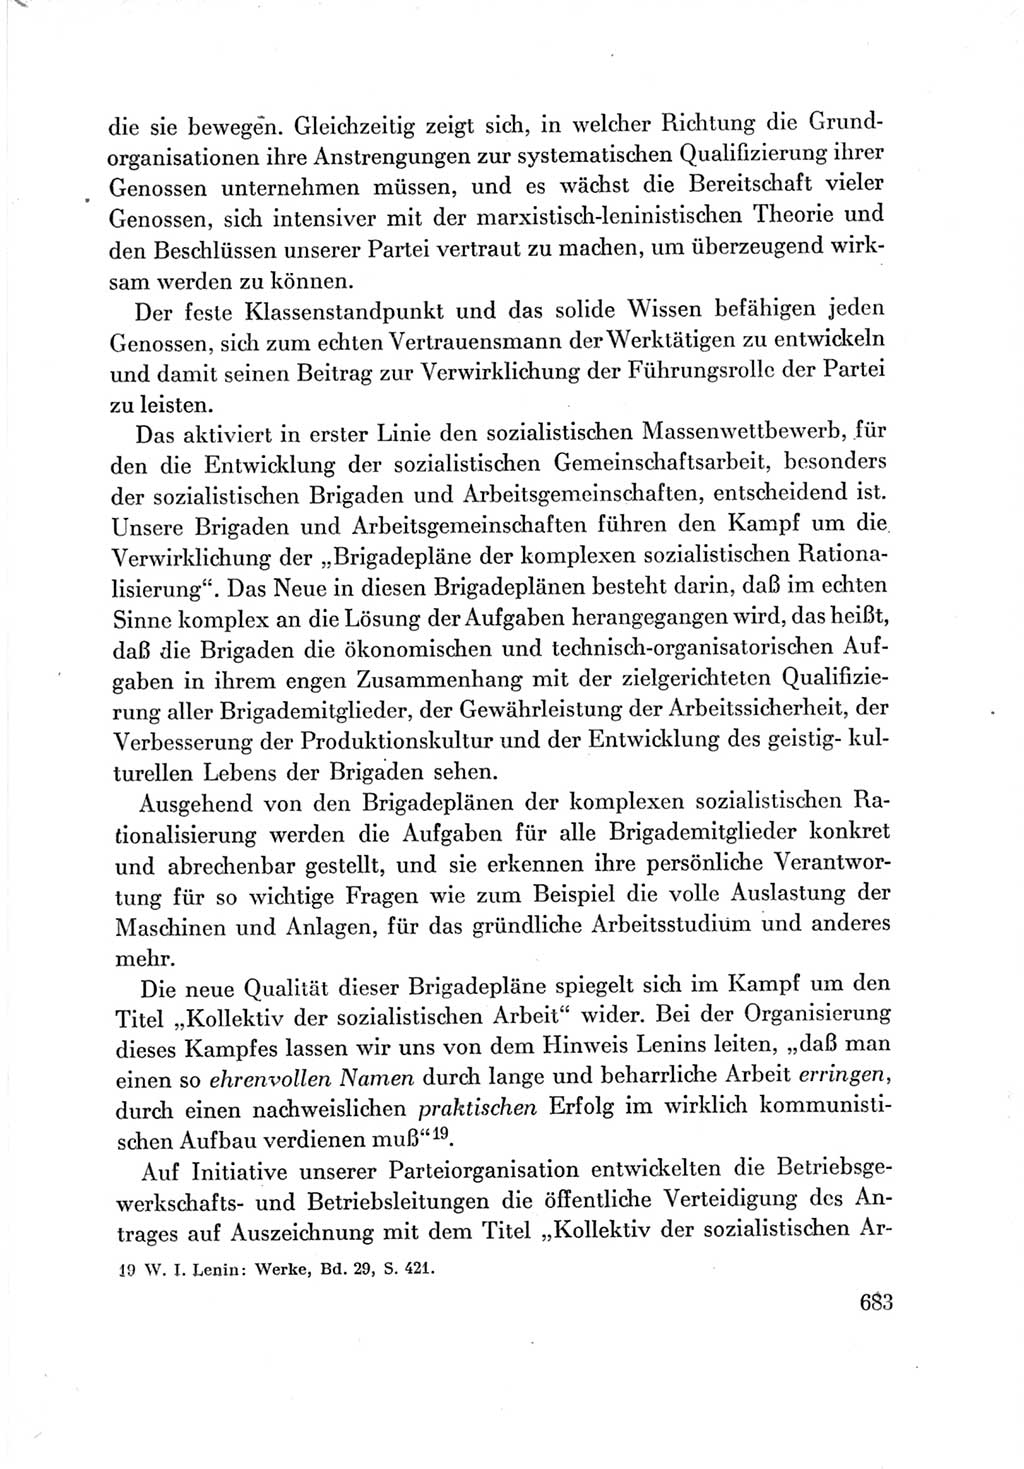 Protokoll der Verhandlungen des Ⅶ. Parteitages der Sozialistischen Einheitspartei Deutschlands (SED) [Deutsche Demokratische Republik (DDR)] 1967, Band Ⅲ, Seite 683 (Prot. Verh. Ⅶ. PT SED DDR 1967, Bd. Ⅲ, S. 683)